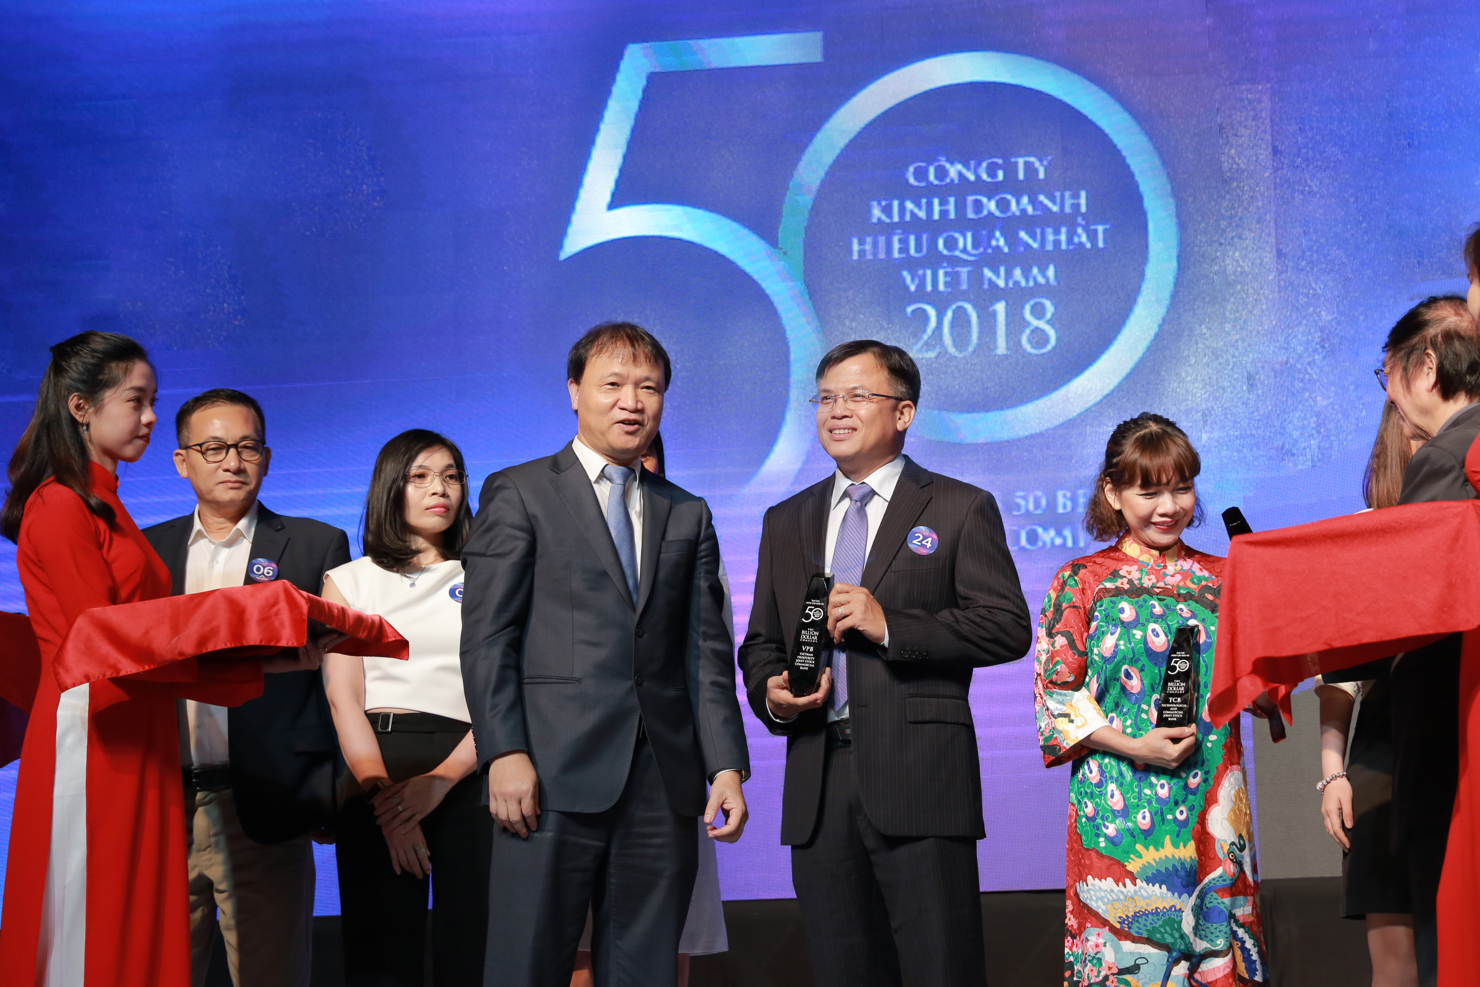 Ông Phan Ngọc Hòa-Phó Tổng giám đốc VPBank nhận giải thưởng “TOP 50 Công ty Kinh doanh Hiệu quả nhất Việt Nam 2018”.